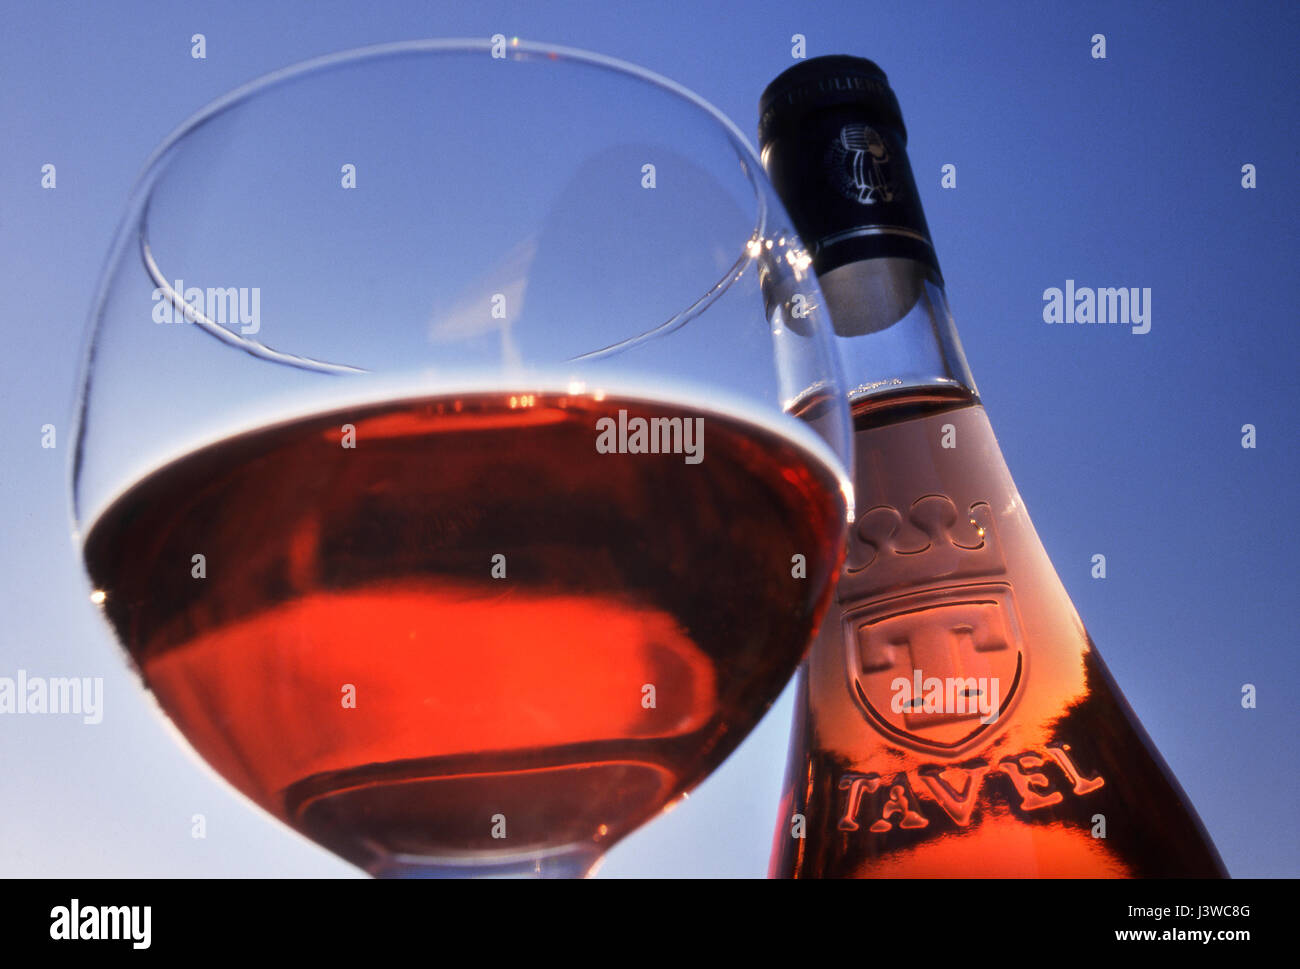 TAVEL ROSÉ Flasche und Glas von Tavel rosé Wein außerhalb im freien gegen reine blaue sonnigen Himmel Gard, Südfrankreich Stockfoto